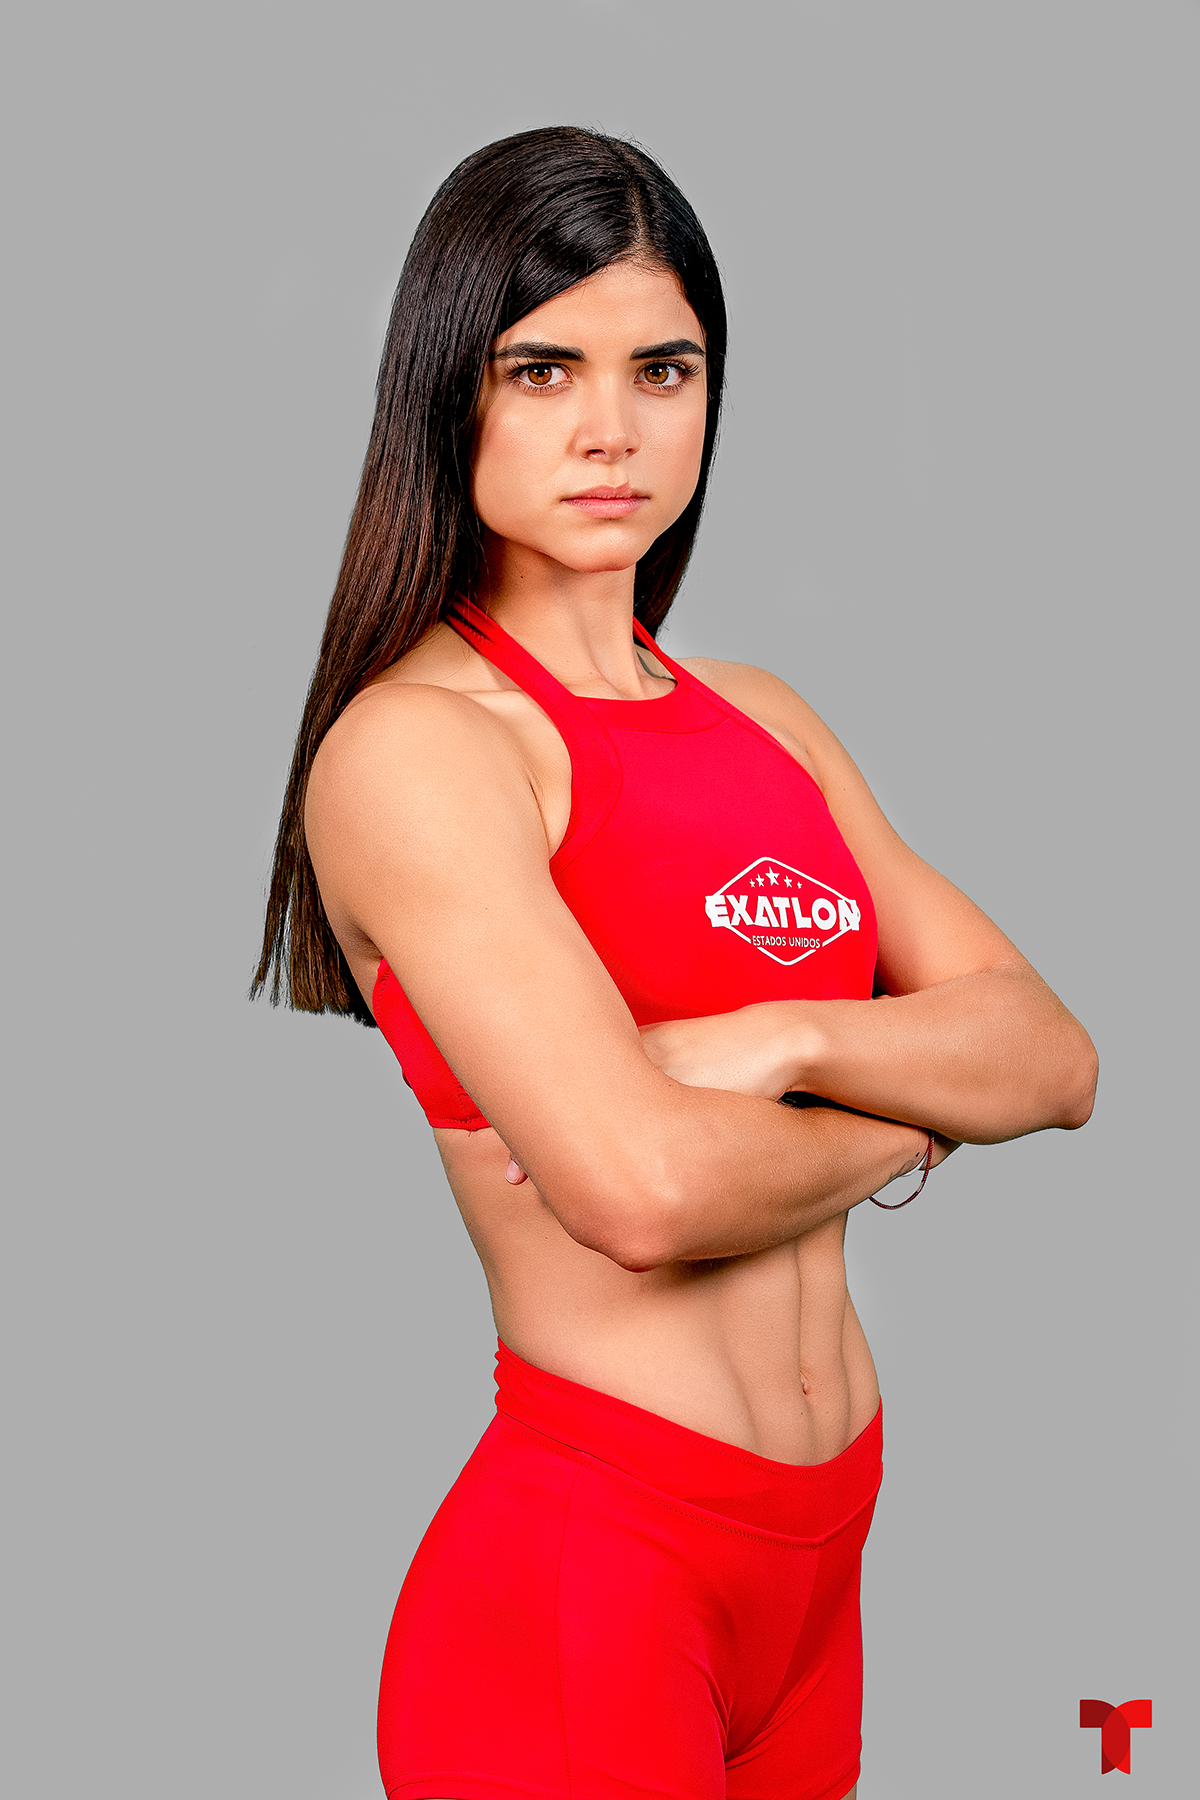 Viviana Michel, equipo rojo de Exatlón